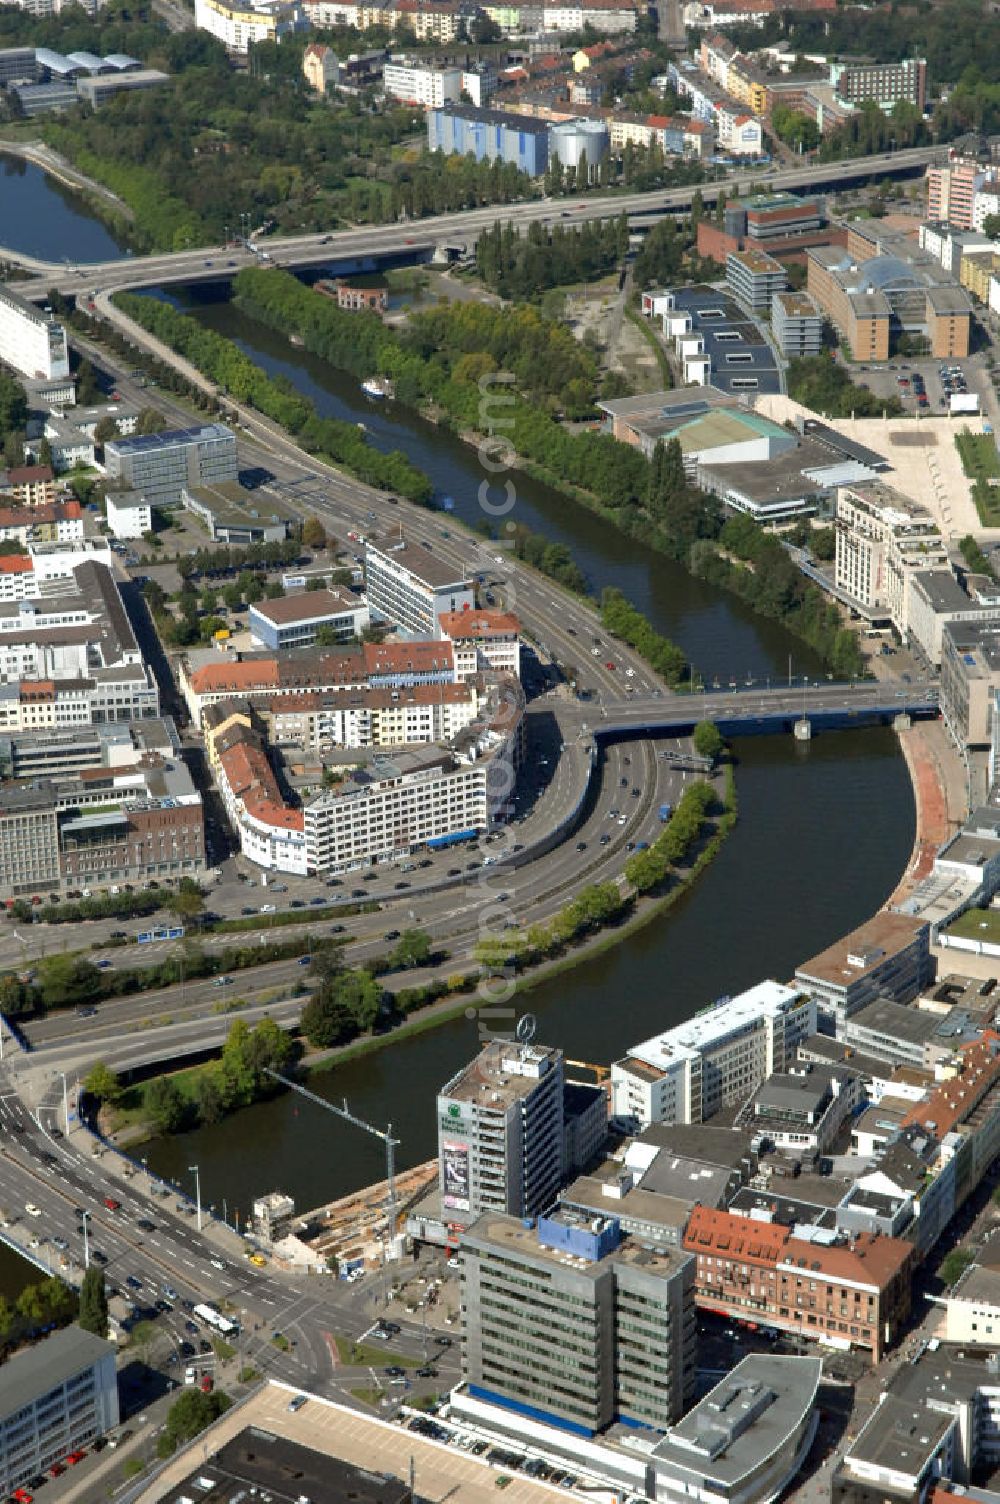 Aerial image Saarbrücken - Blick aus Osten entlang der Saar mit der Luisenbrücke und Westpangenbrücke. Am linken Saarufer erstreckt sich die Autobahn 620 mit der Ausfahrt Saarbrücken Wilhelm-Heinrich-Brücke im Stadtteil Alt-Saarbrücken. Am rechten Saarufer erstreckt sich der Stadtteil St. Johann. View from east along the Saar river.